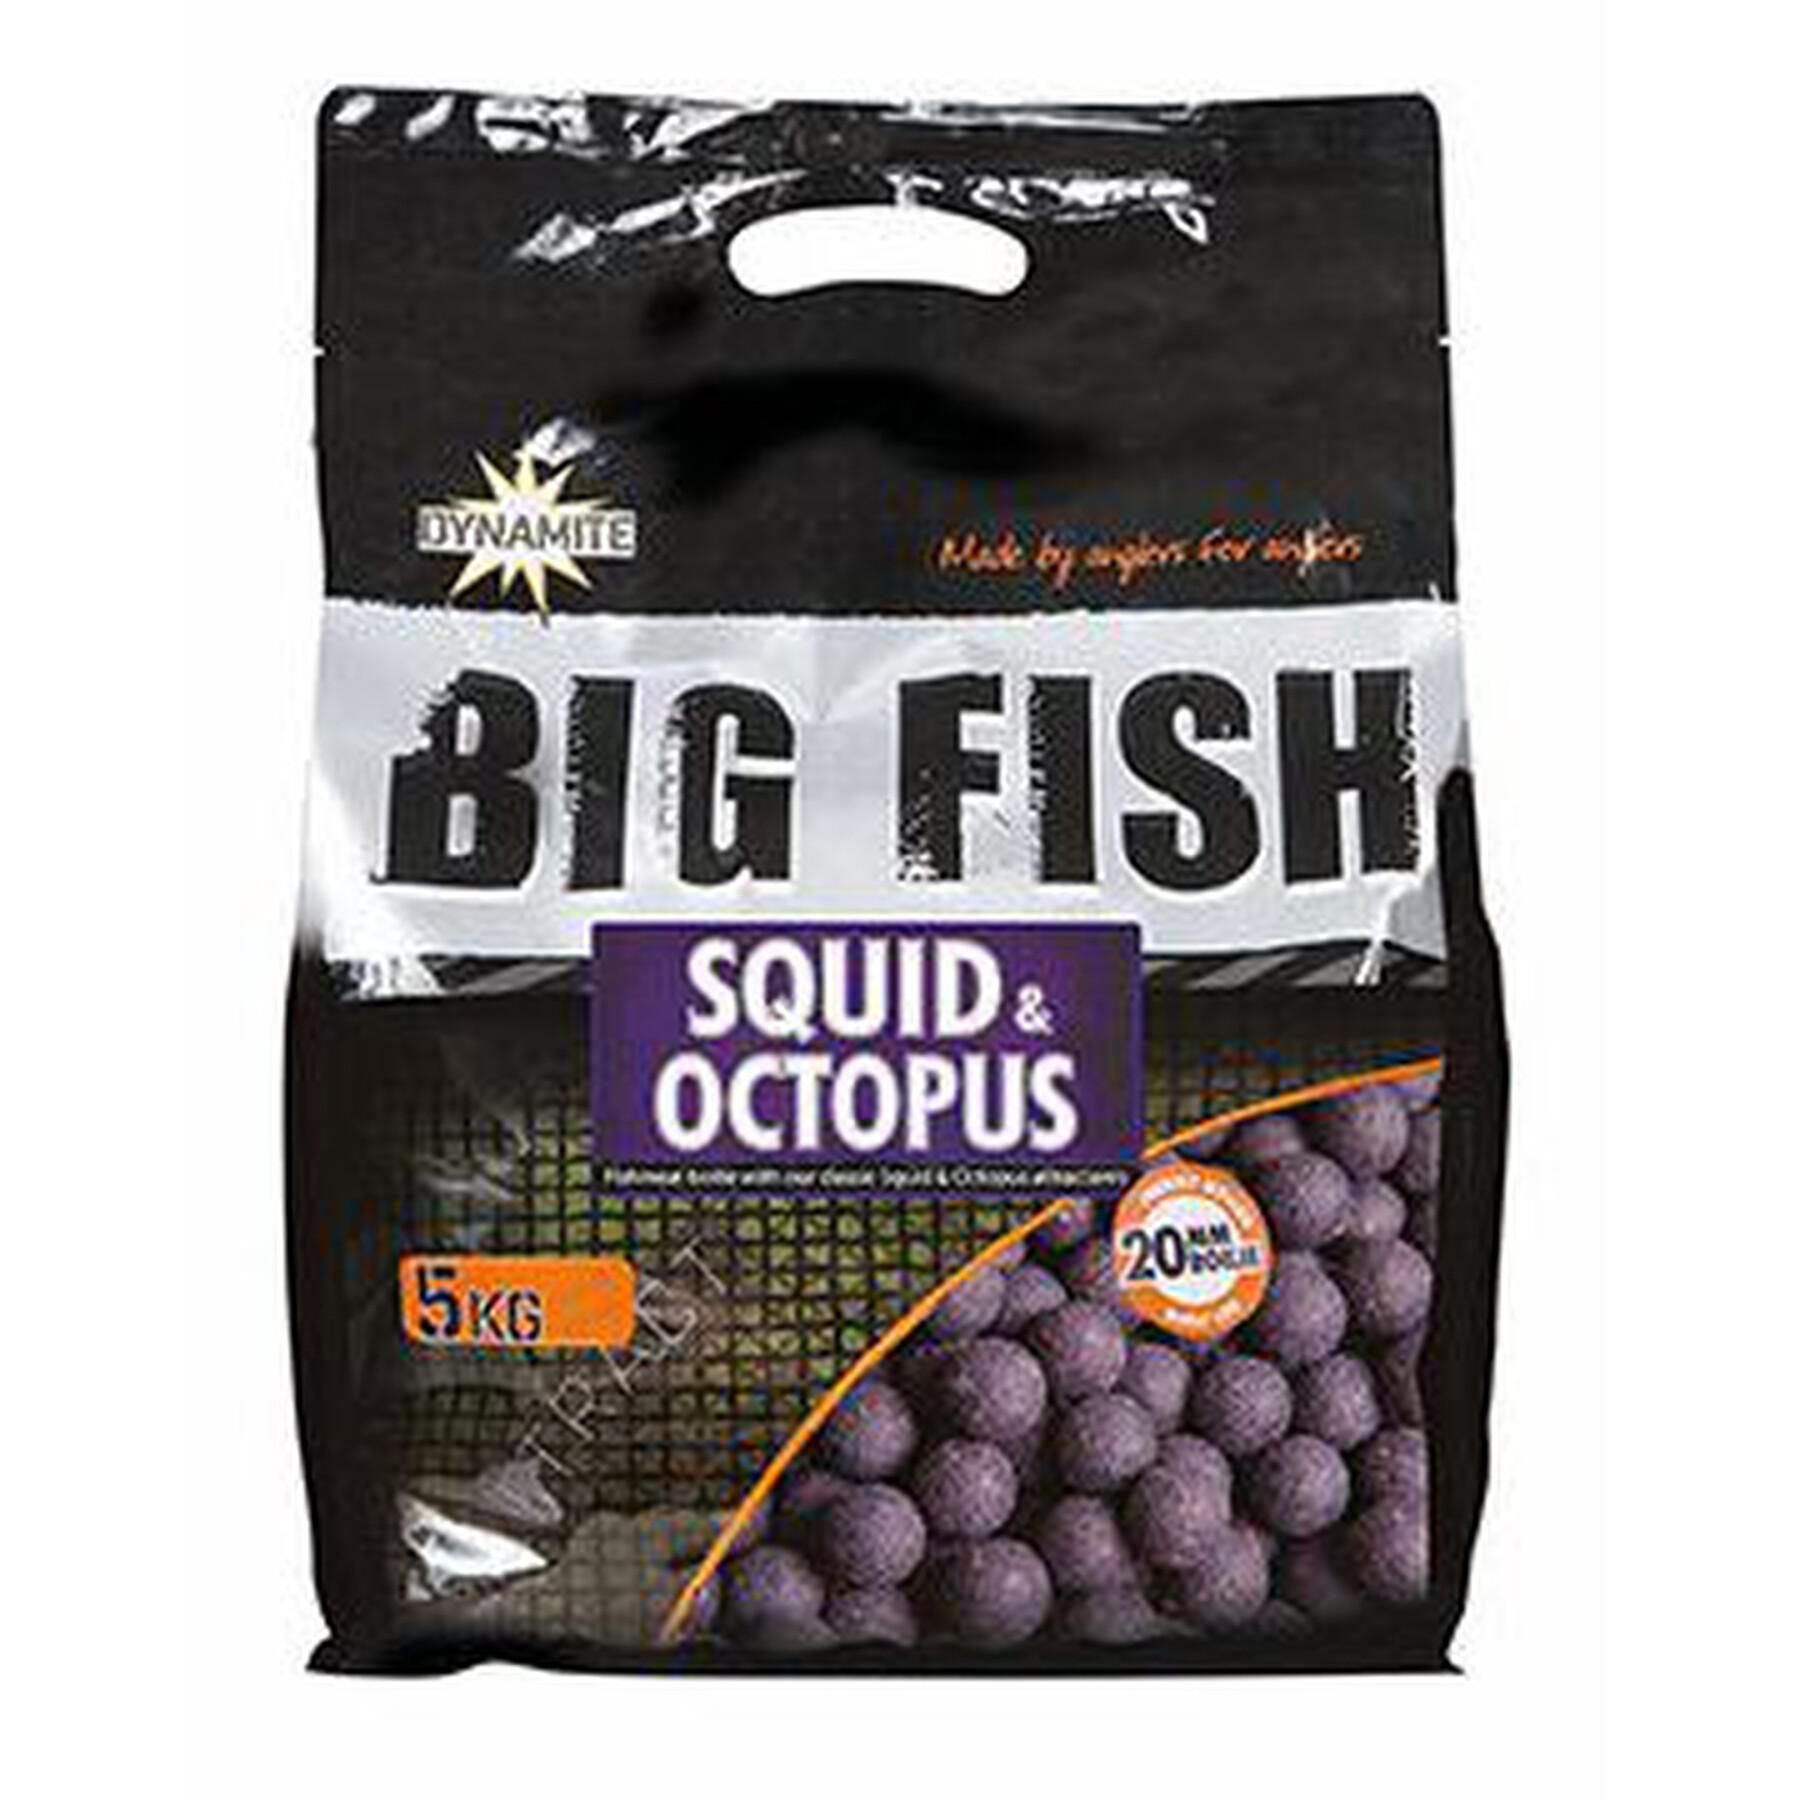 Dichte boilies Dynamite Baits squid & octopus 20 mm 5 kg